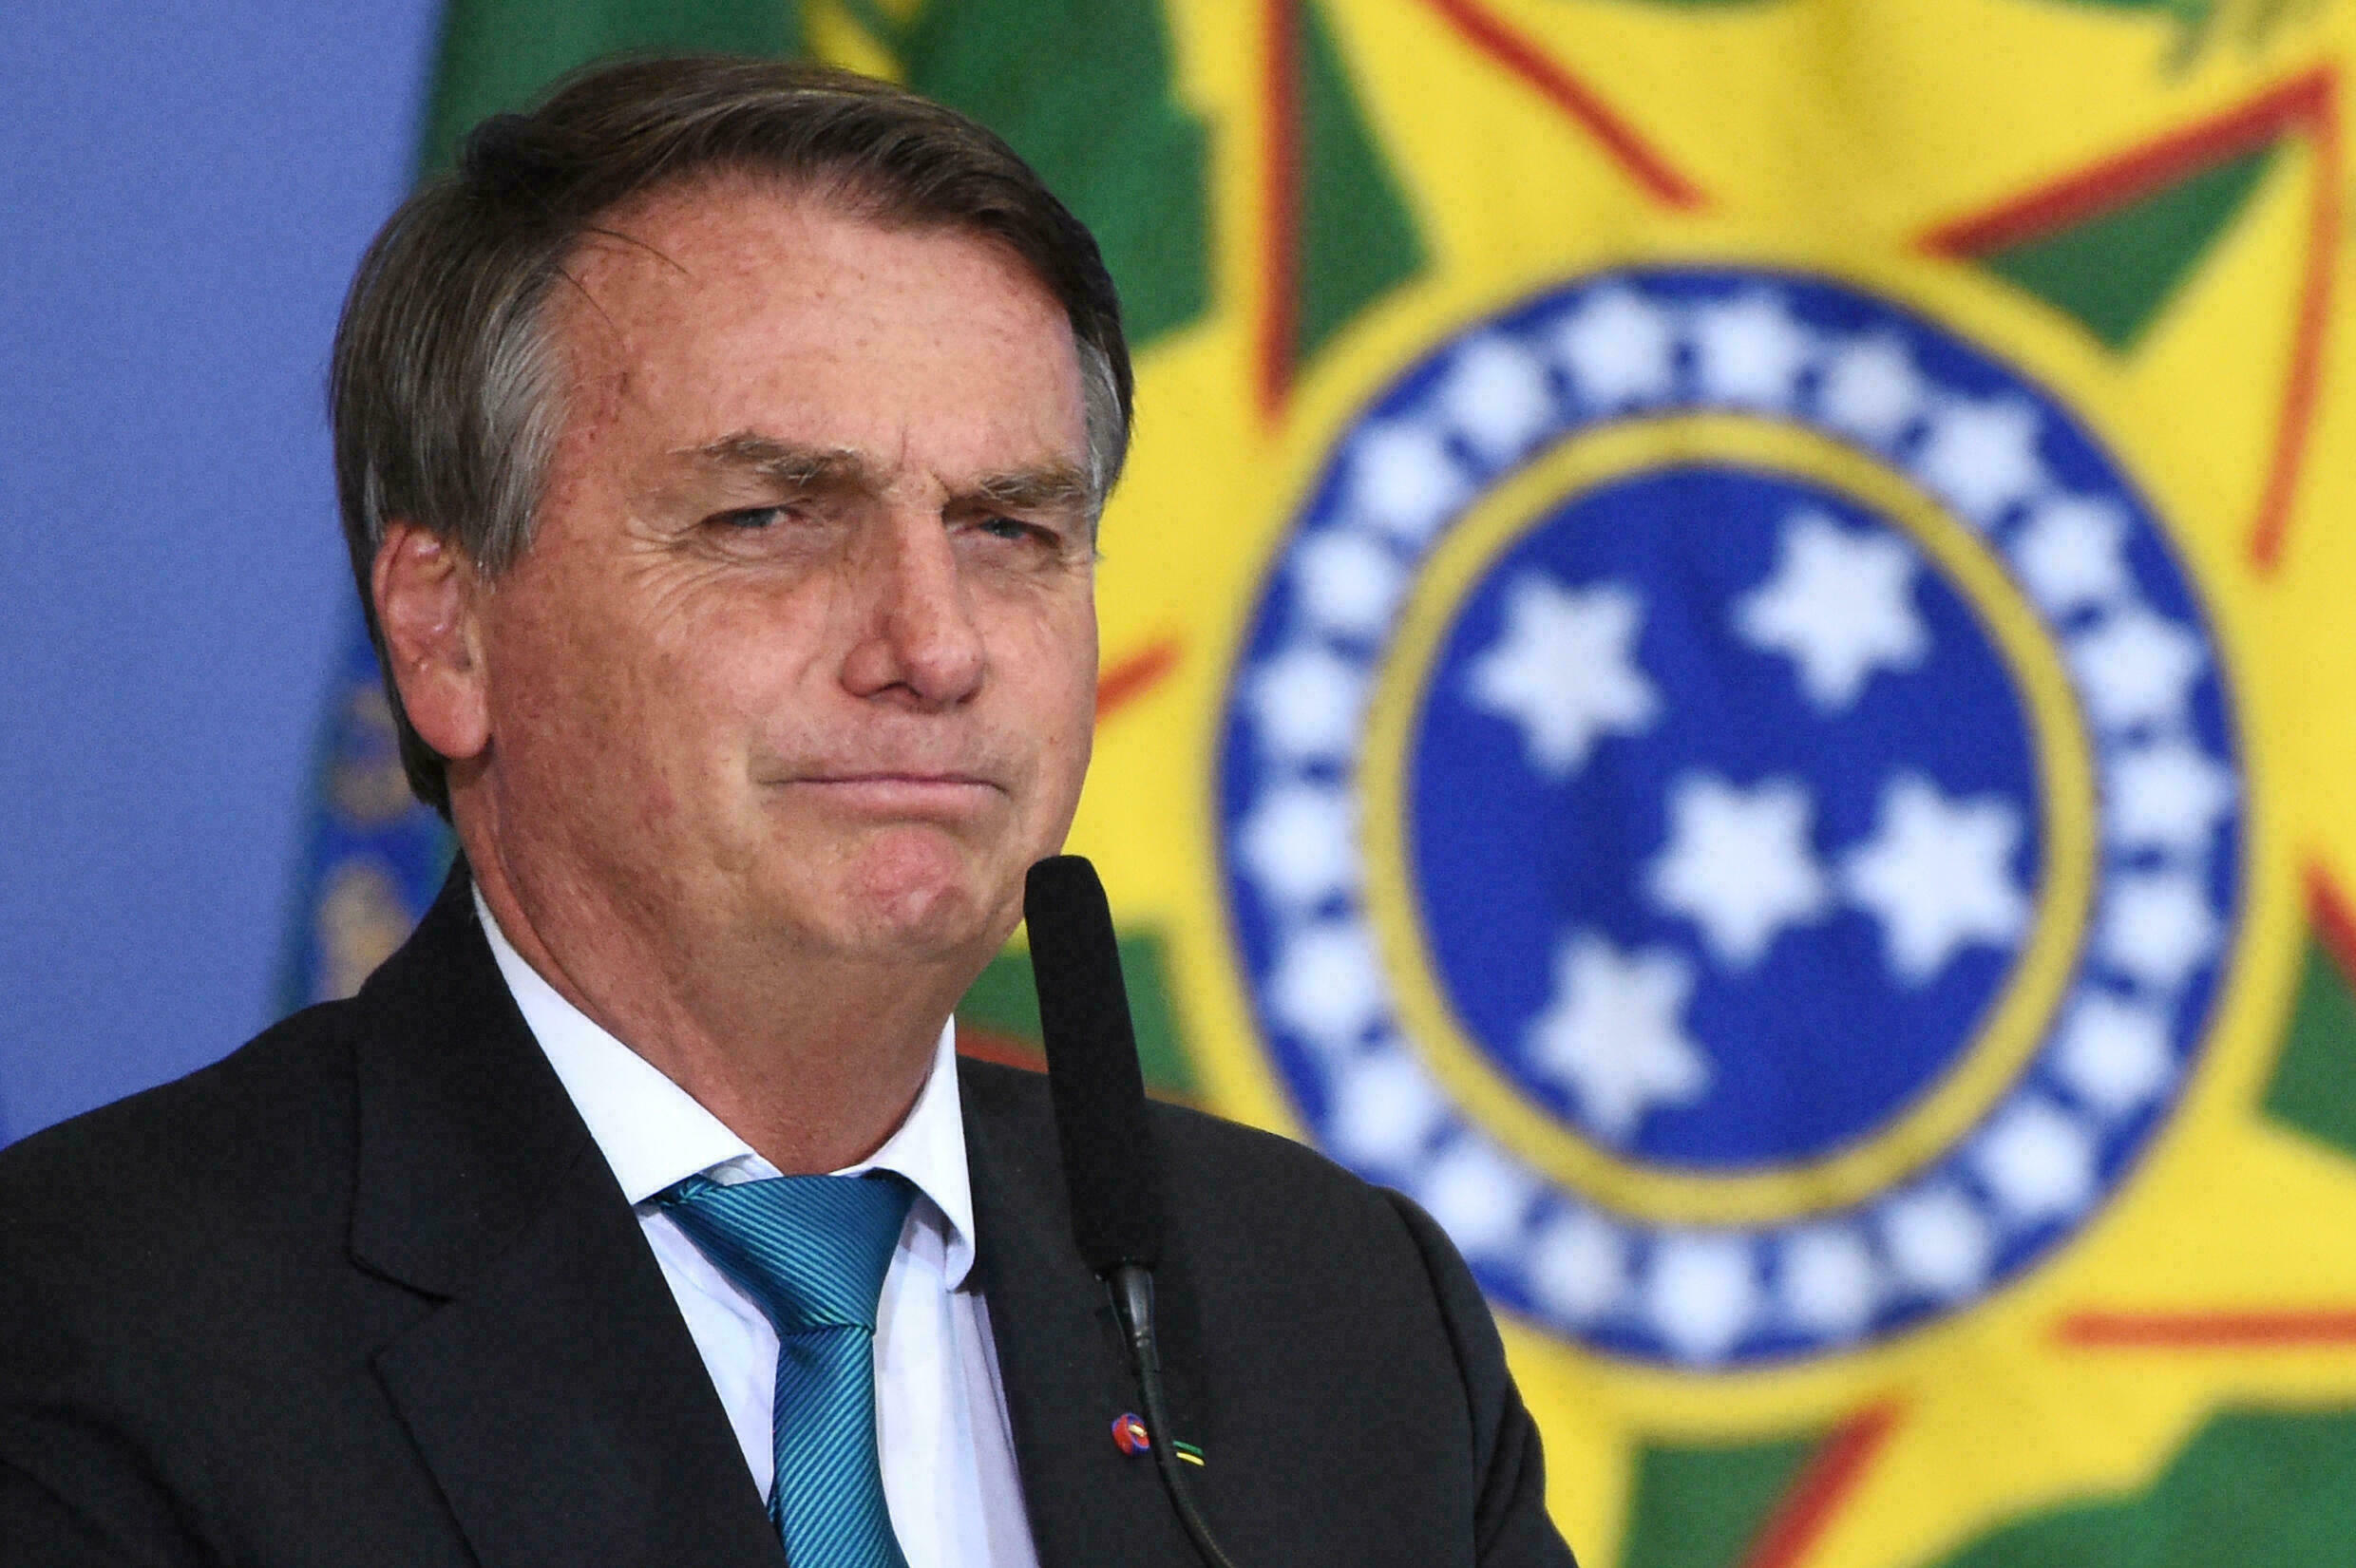 Comisión del Senado de Brasil aprobó informe que acusa a Bolsonaro de cometer “crímenes contra la humanidad”